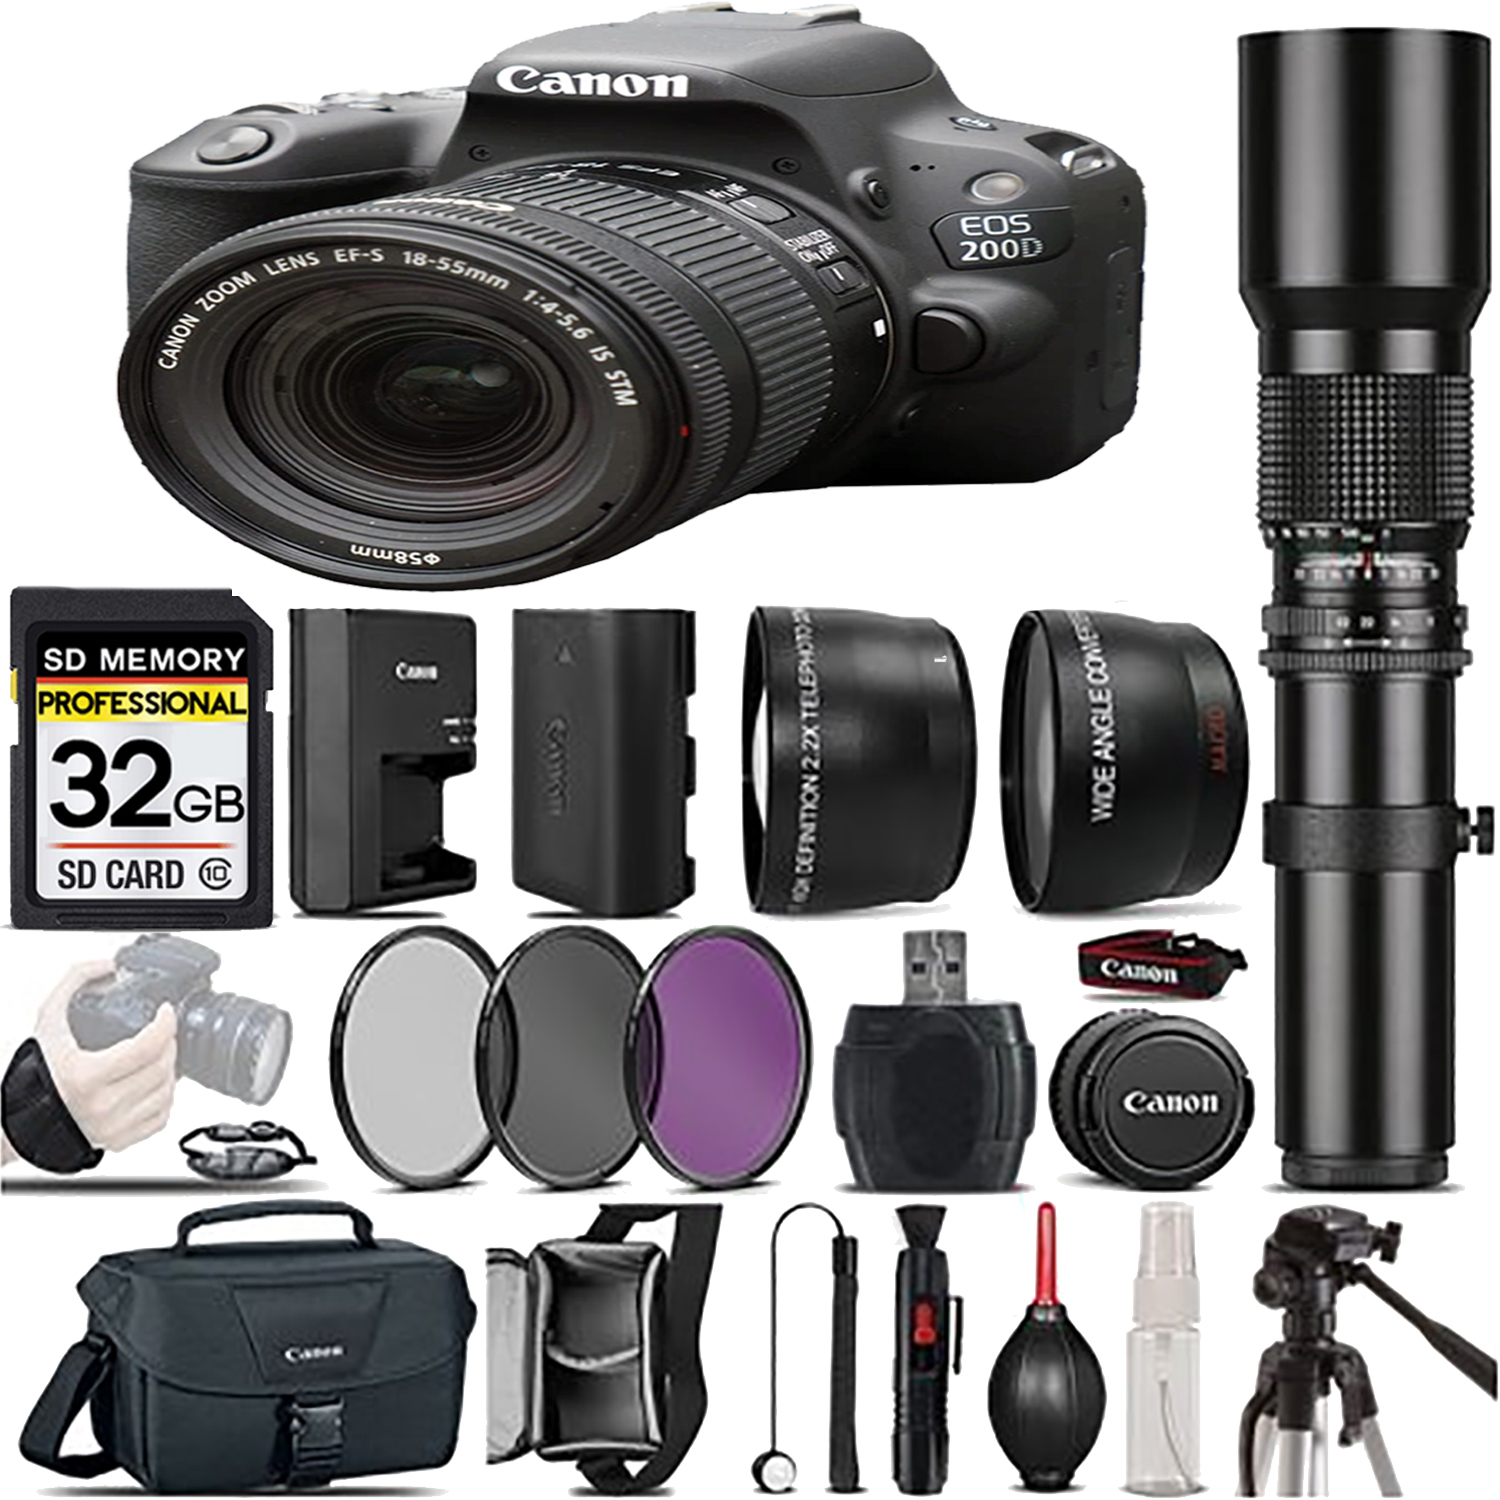 EOS Rebel 200D DSLR Camera(Black) + 18-55mm IS STM + 500mm - Best Value Kit *FREE SHIPPING*